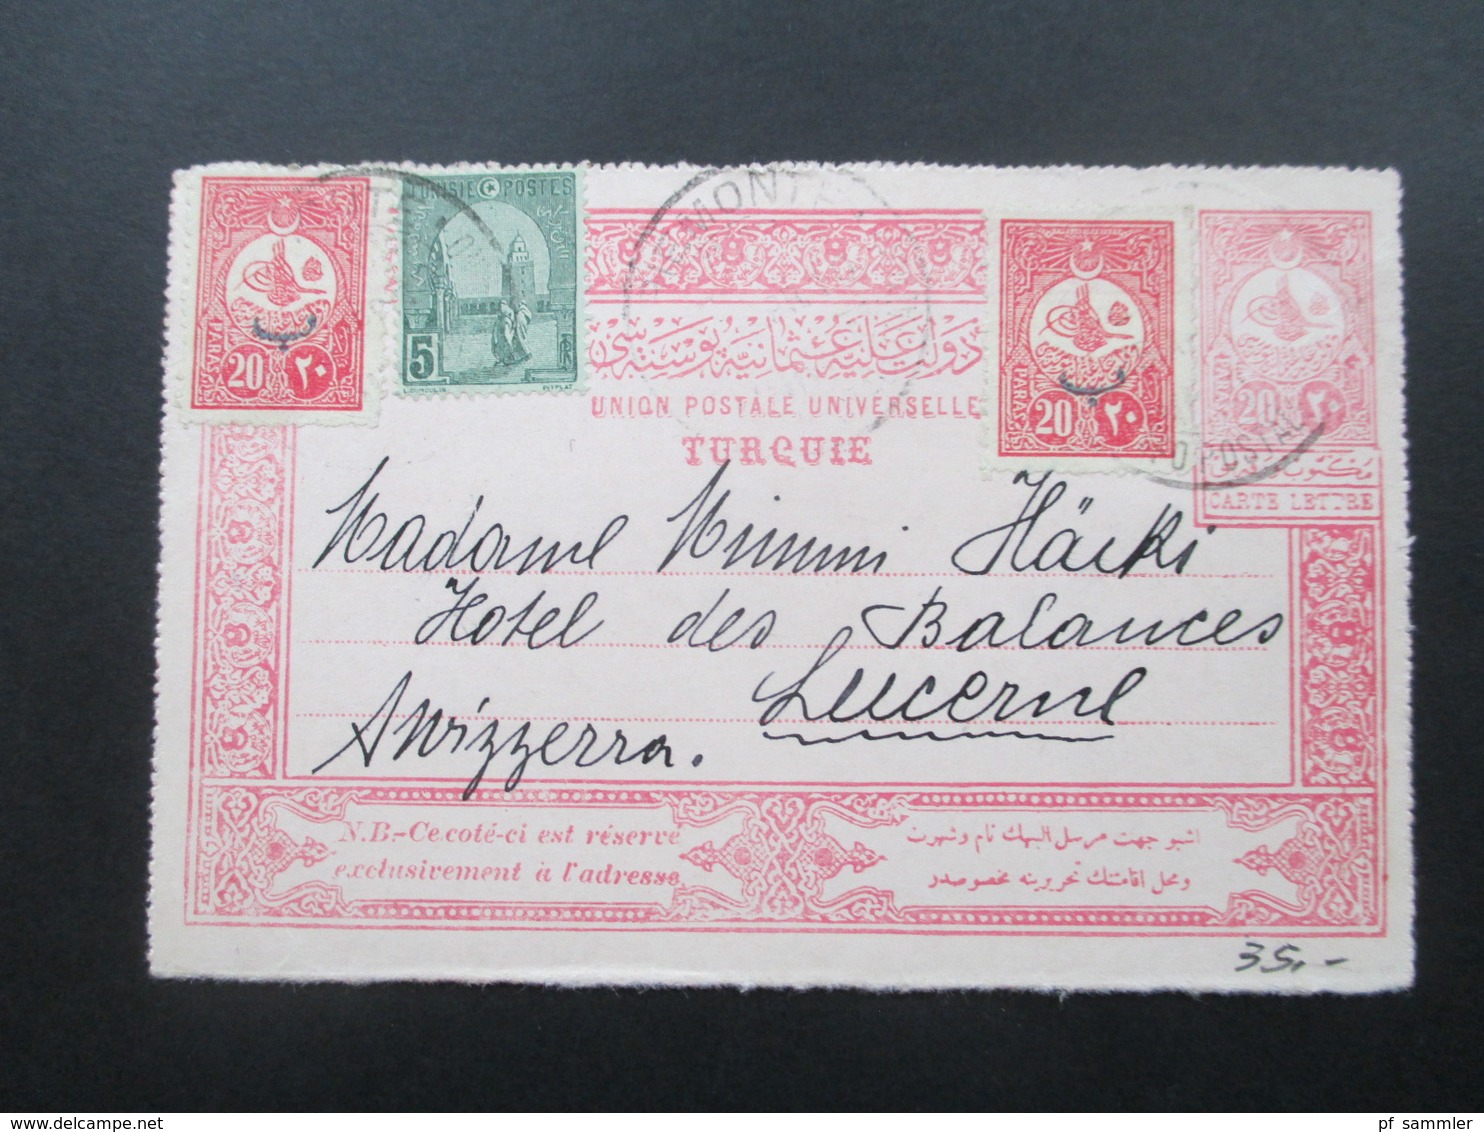 Türkei Um 1910 GA Mit Zusatzfrankaturen Und Marke Von Tunesien!! An Das Hotel Des Balances Luzern. Toller Beleg!! - Covers & Documents